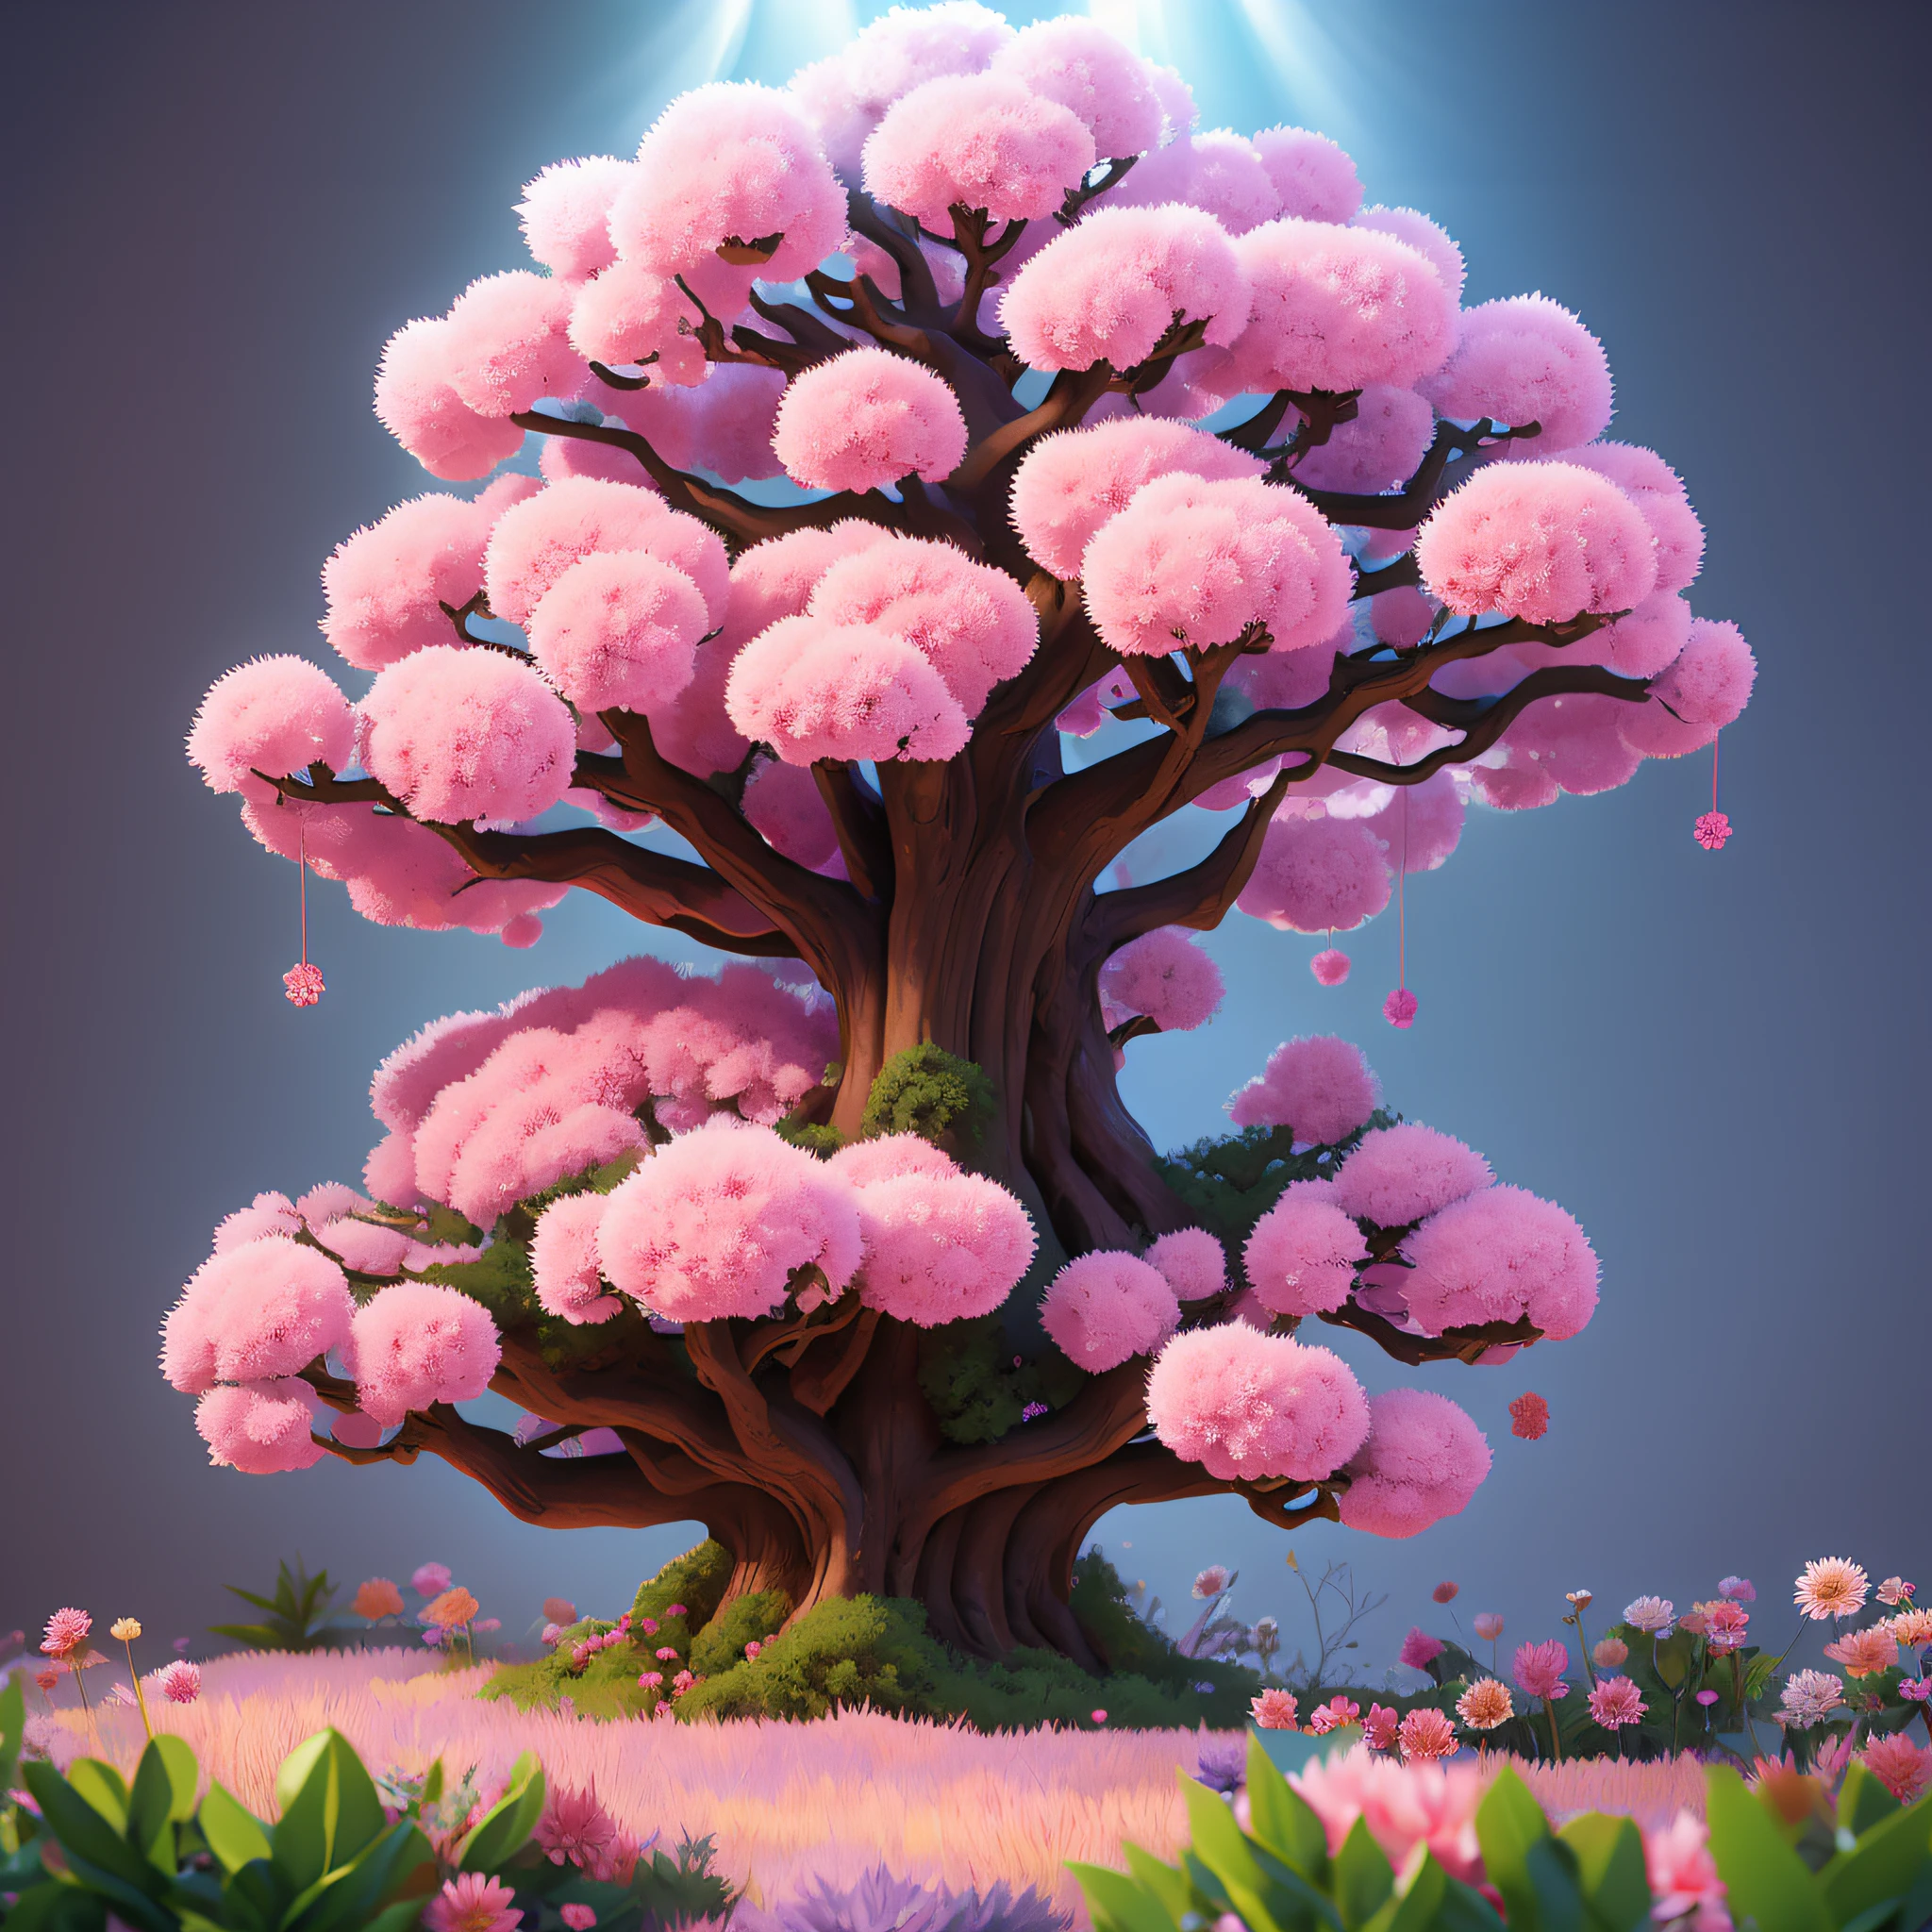 大树隐隐透出粉红色和紫色的花朵乳房美丽